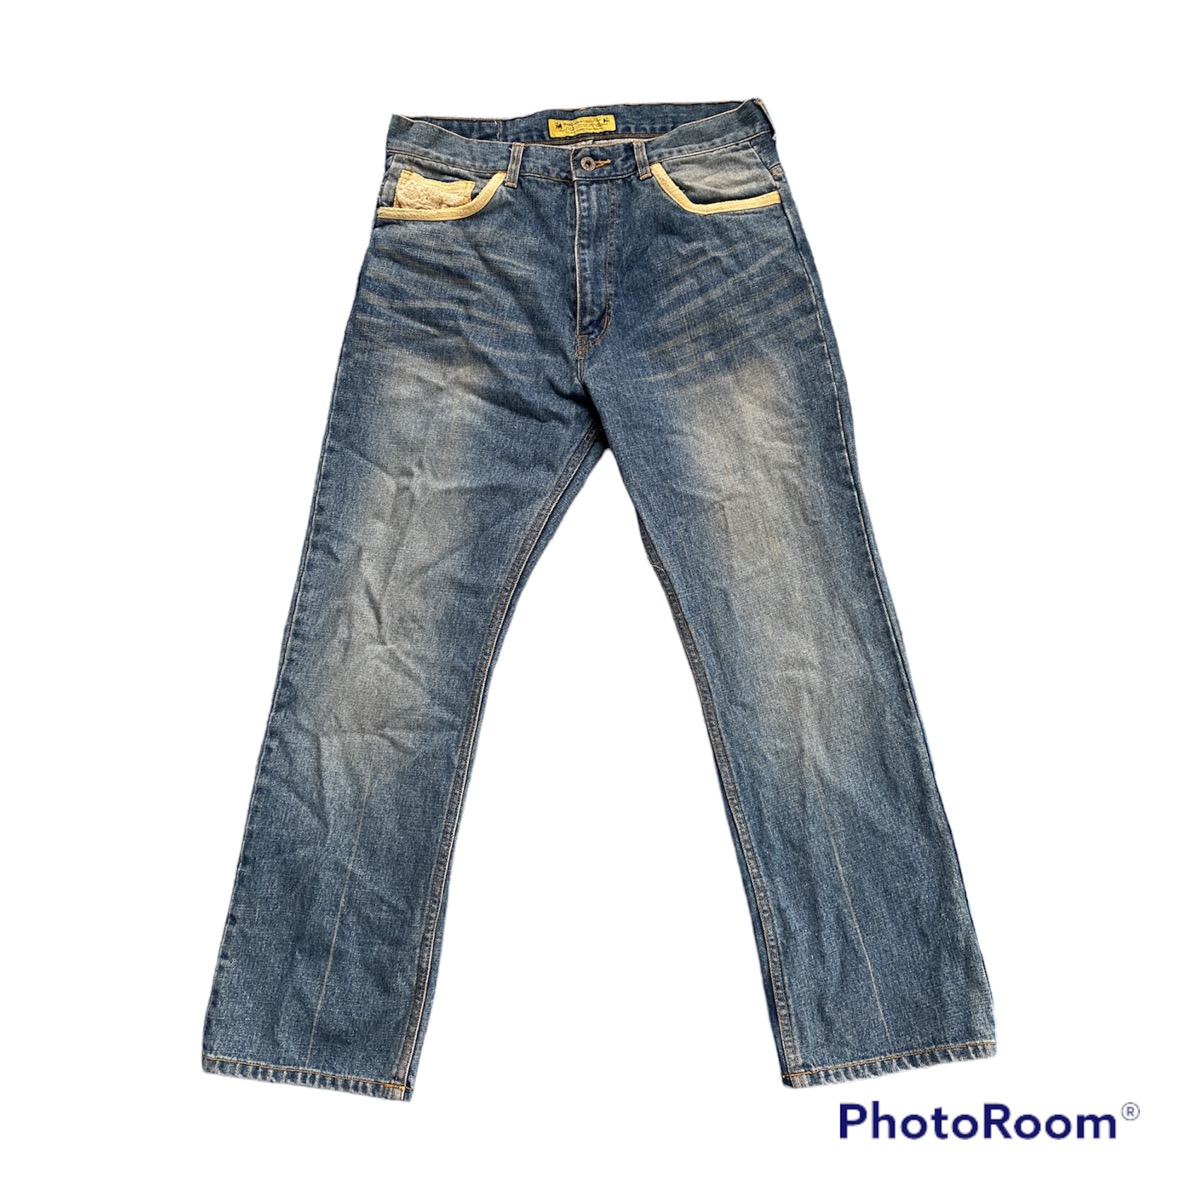 sasquatchfabrix jeans denim old cotton pants - 1